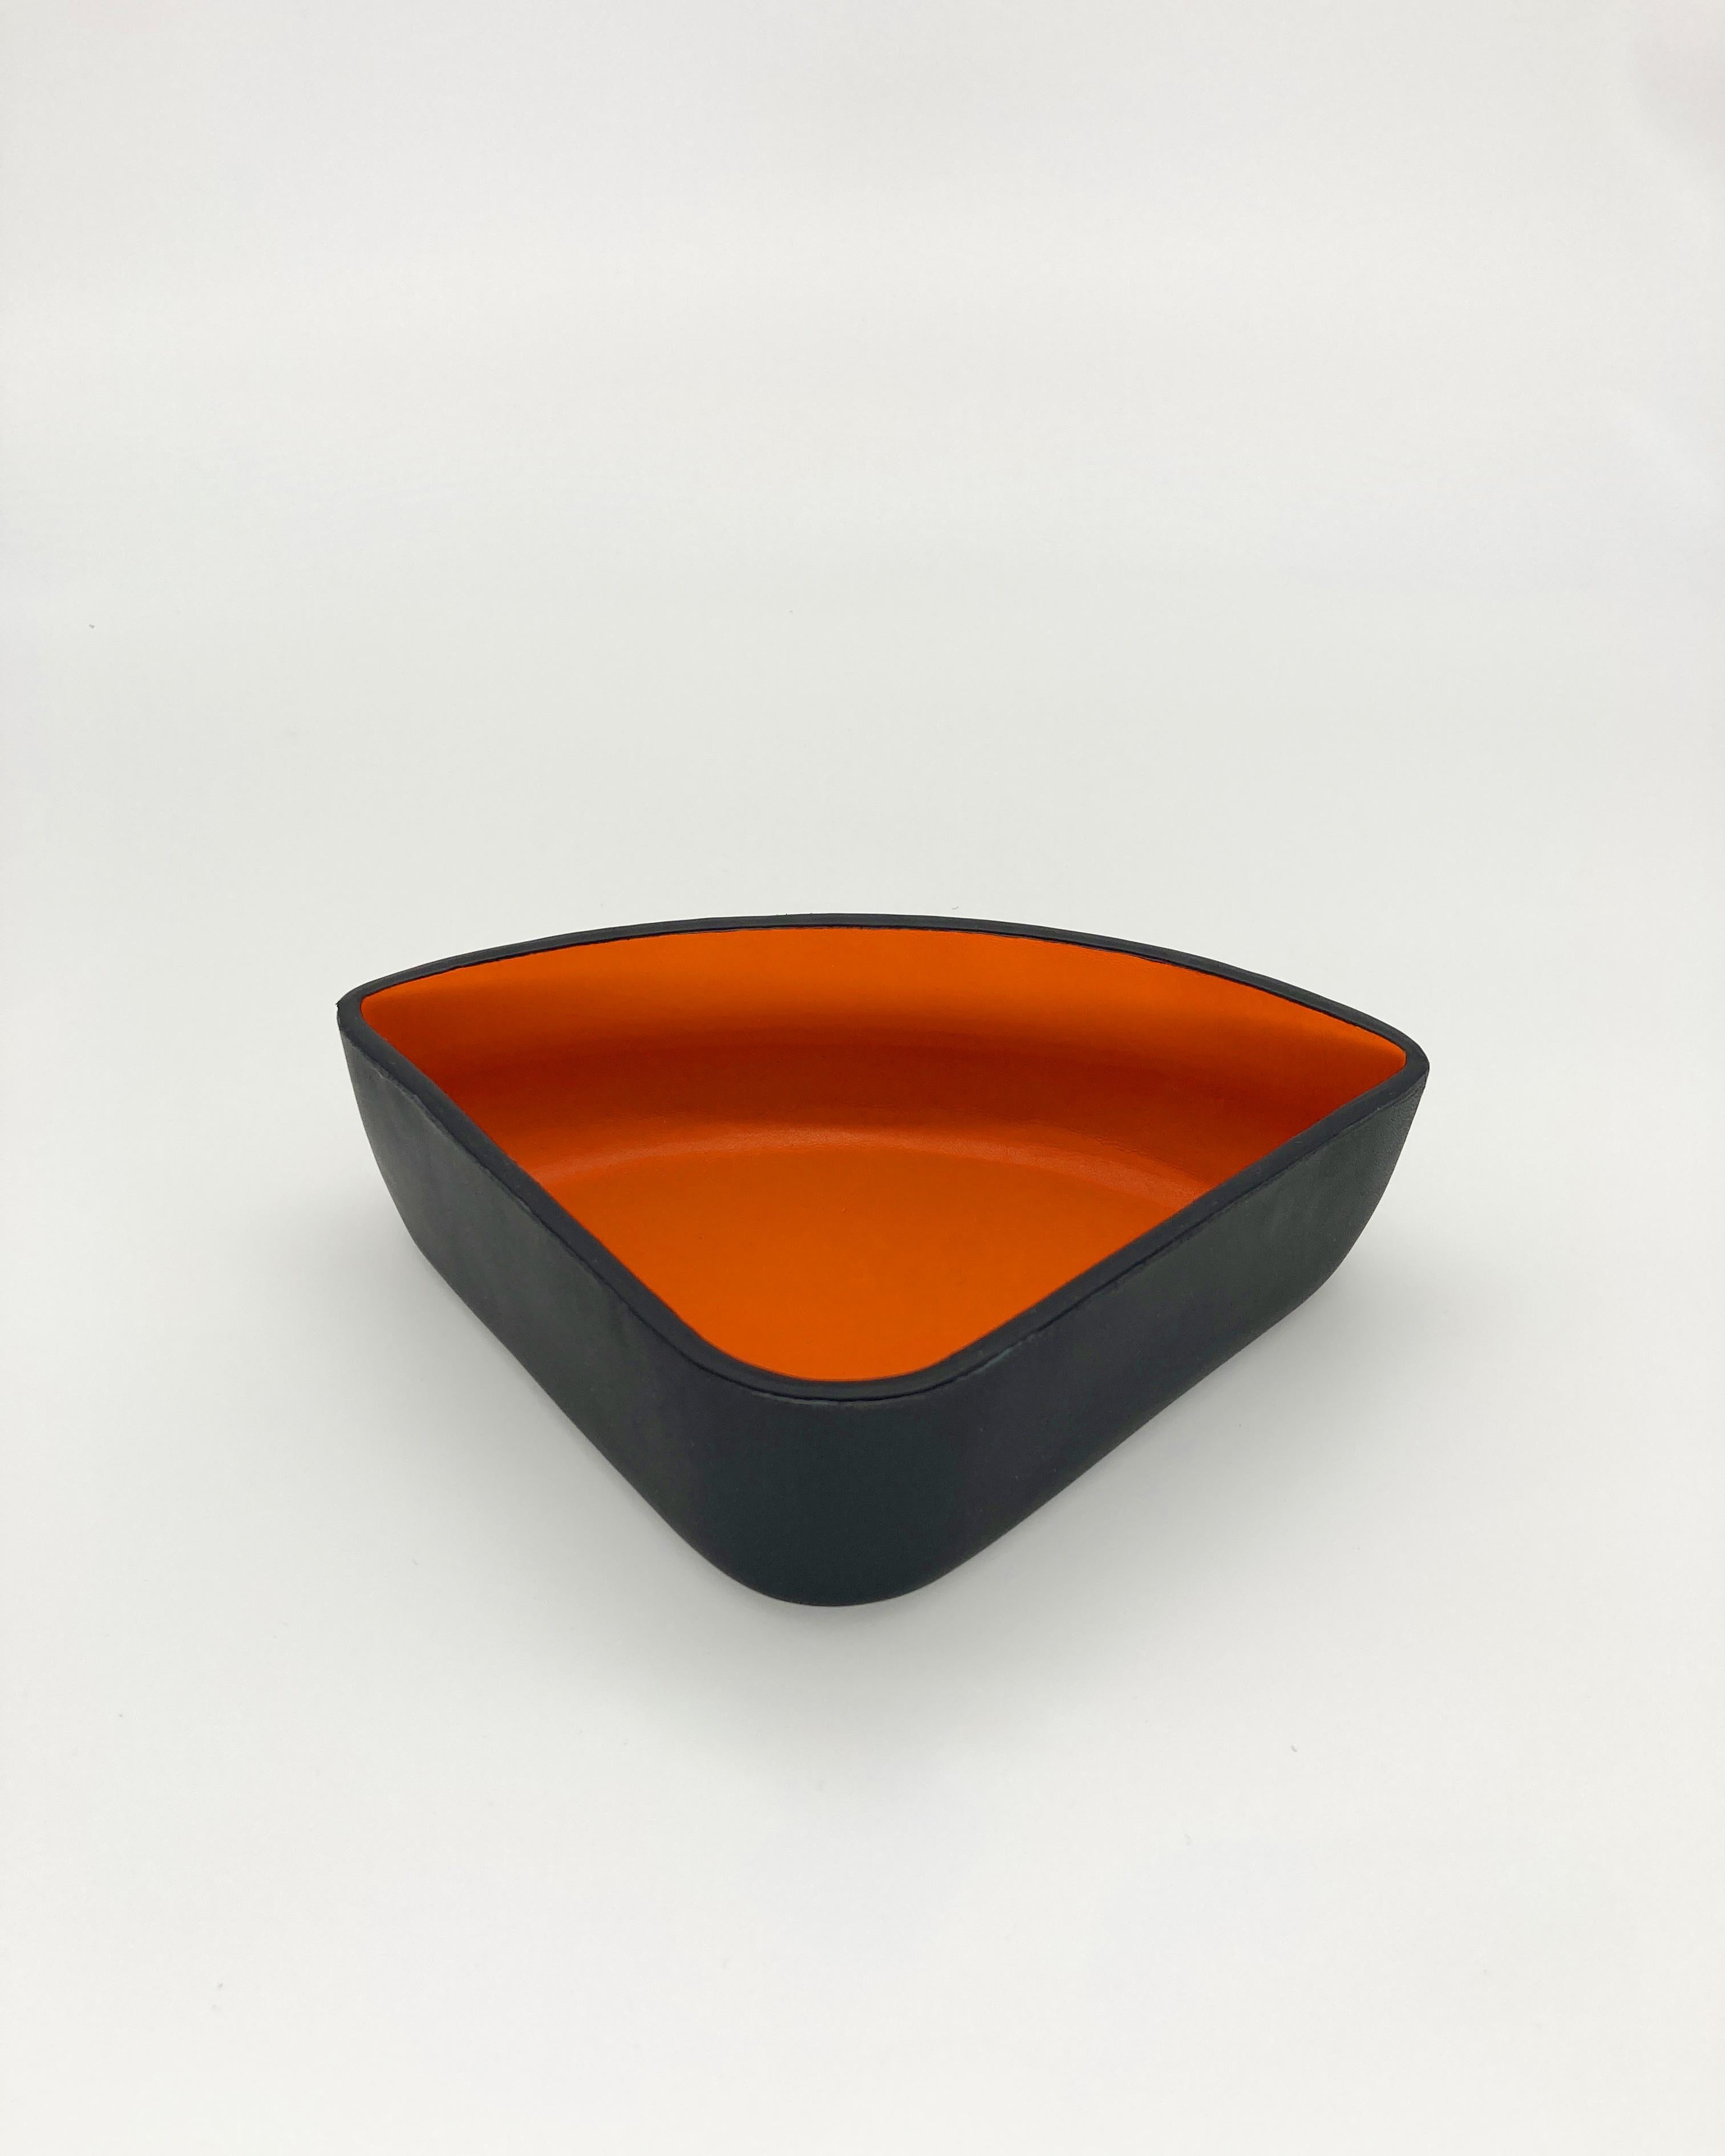 Spanish Handmade Luxury Leather Bowl Set in Sunset Orange and Black